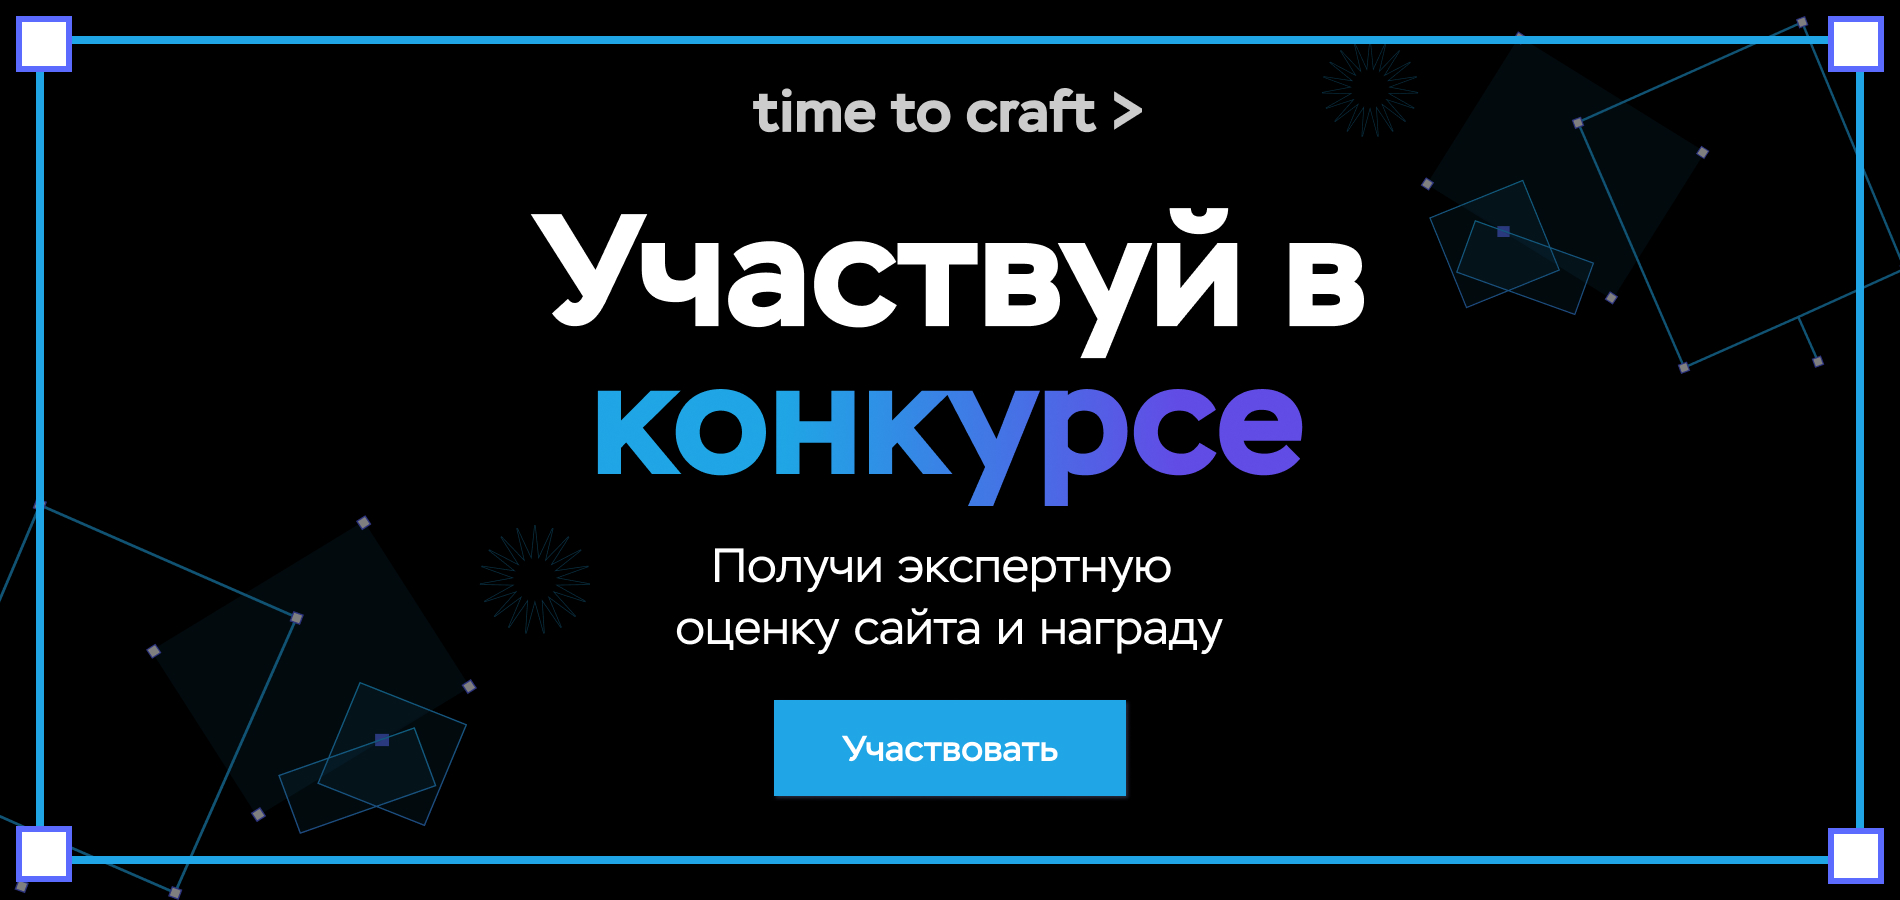 Time to craft> – конкурс для создателей сайтов